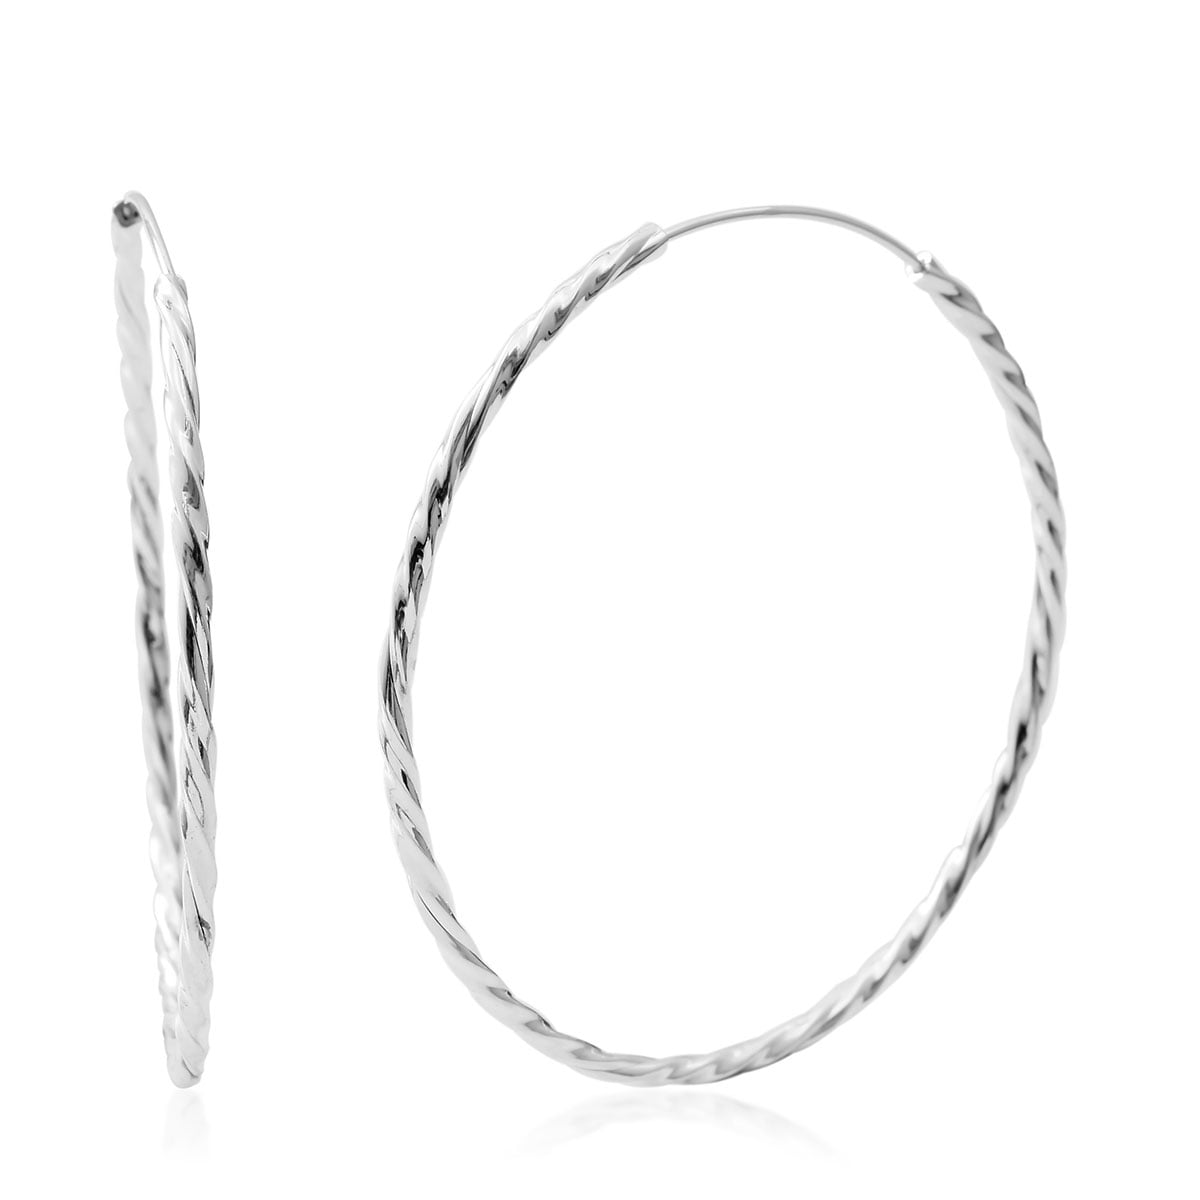 Shop LC Women Elegant Earrings Silver Hoop